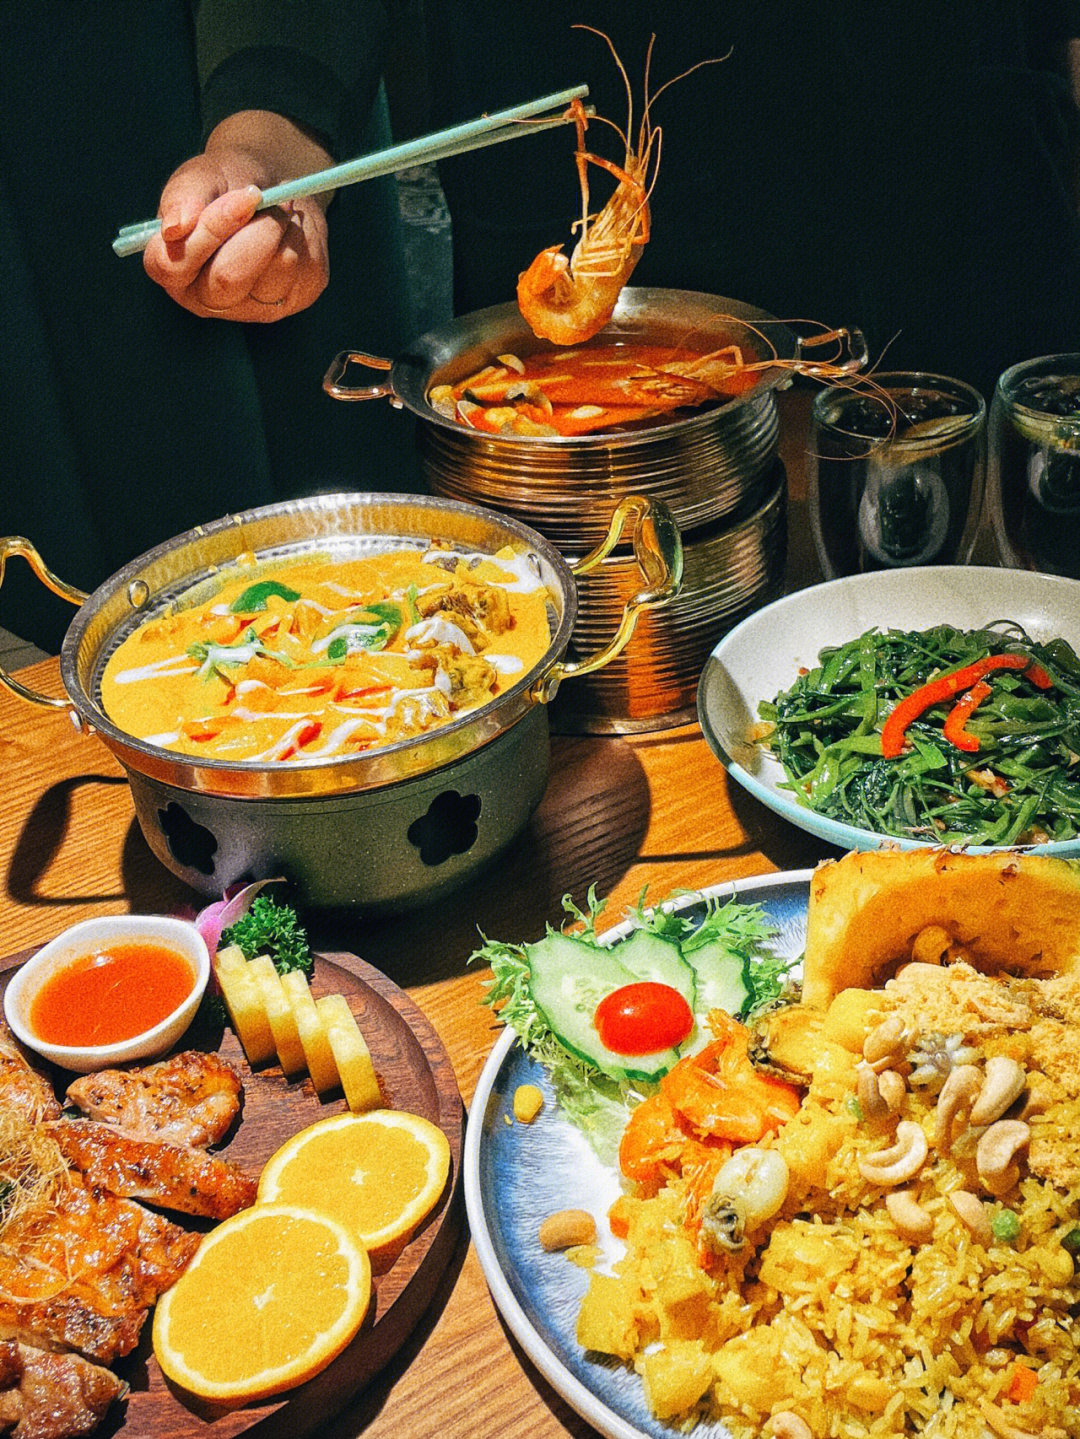 广州美食丨藏匿商场内地道泰国菜